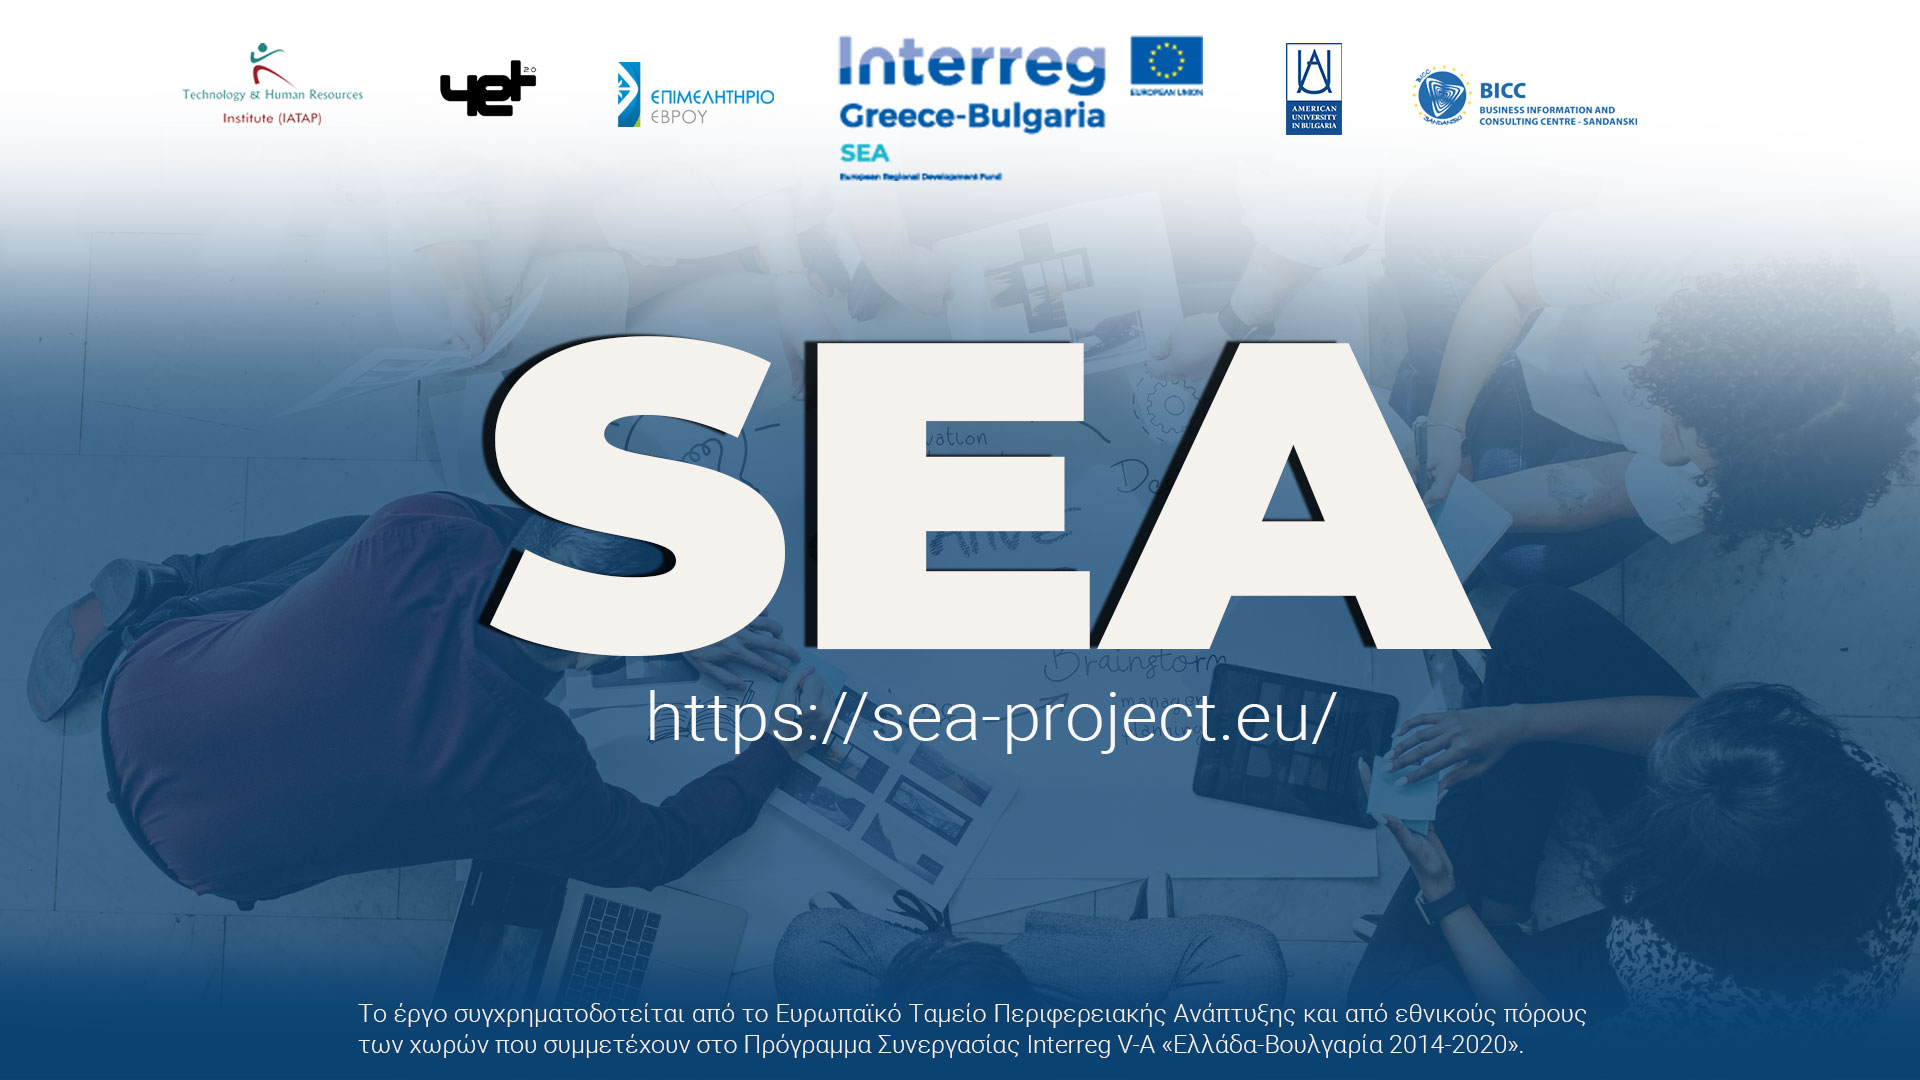 Διασυνοριακός επιταχυντής SEA: Πάρε μέρος στον διαγωνισμό και διεκδίκησε 1 από τα 3 έπαθλα